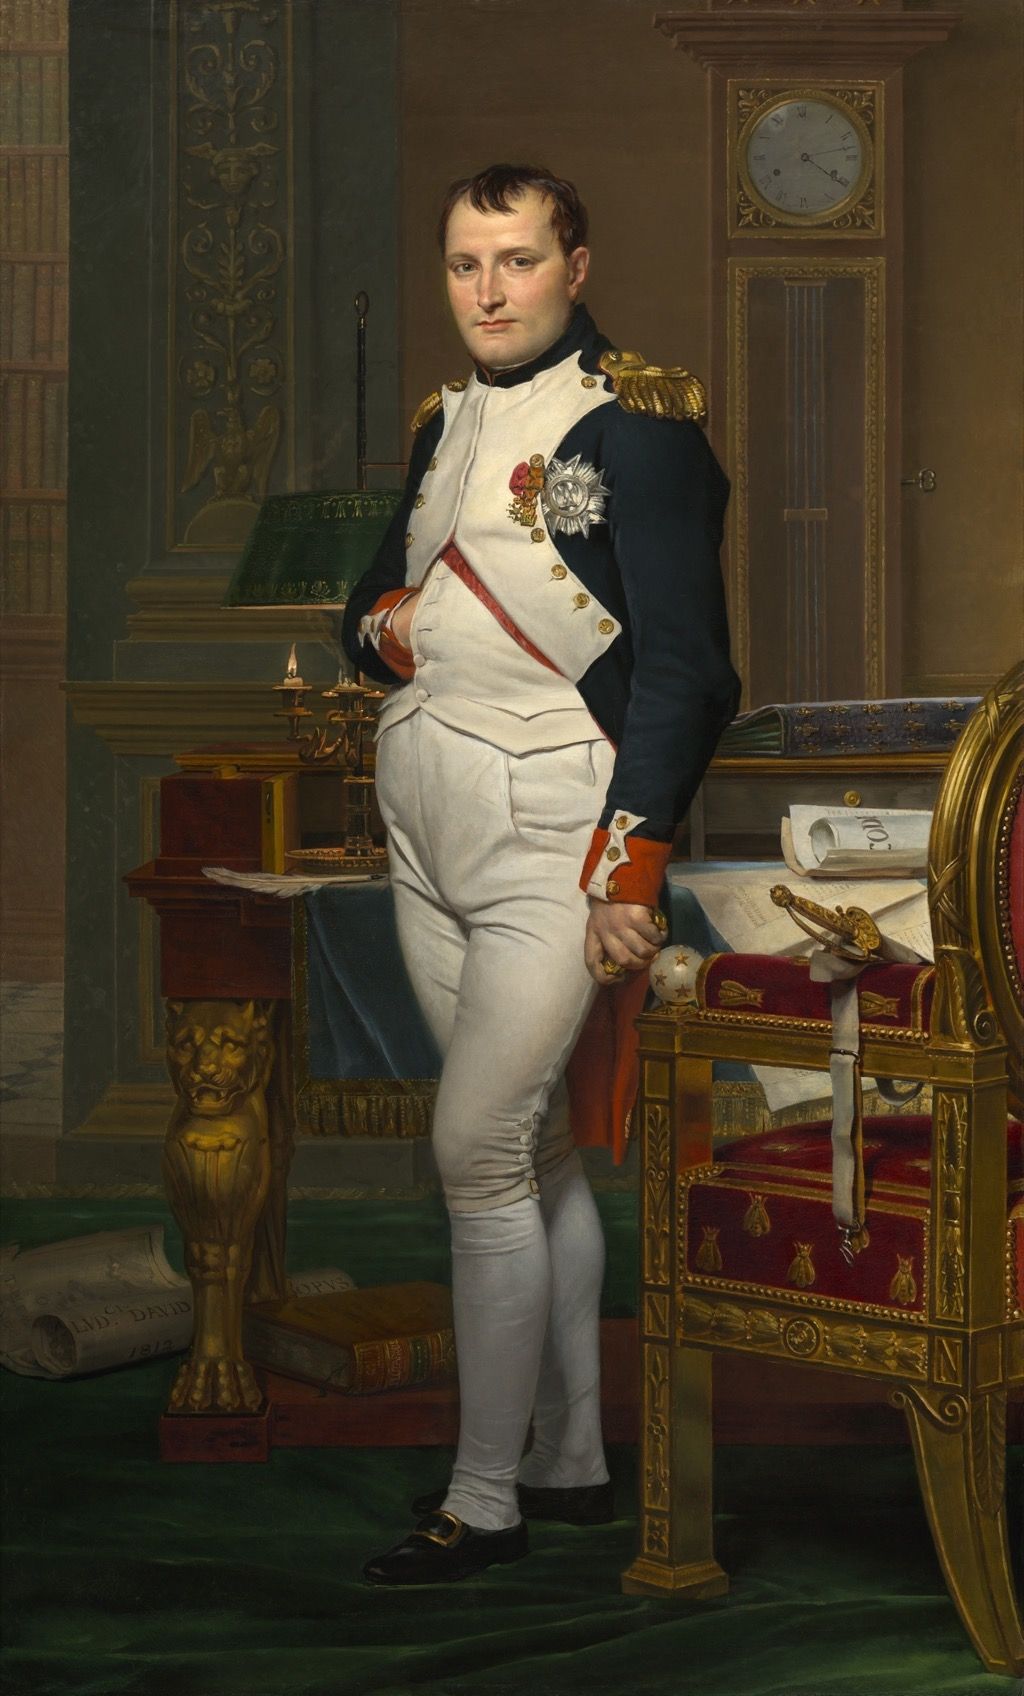 Napoleon fornærmende politikere